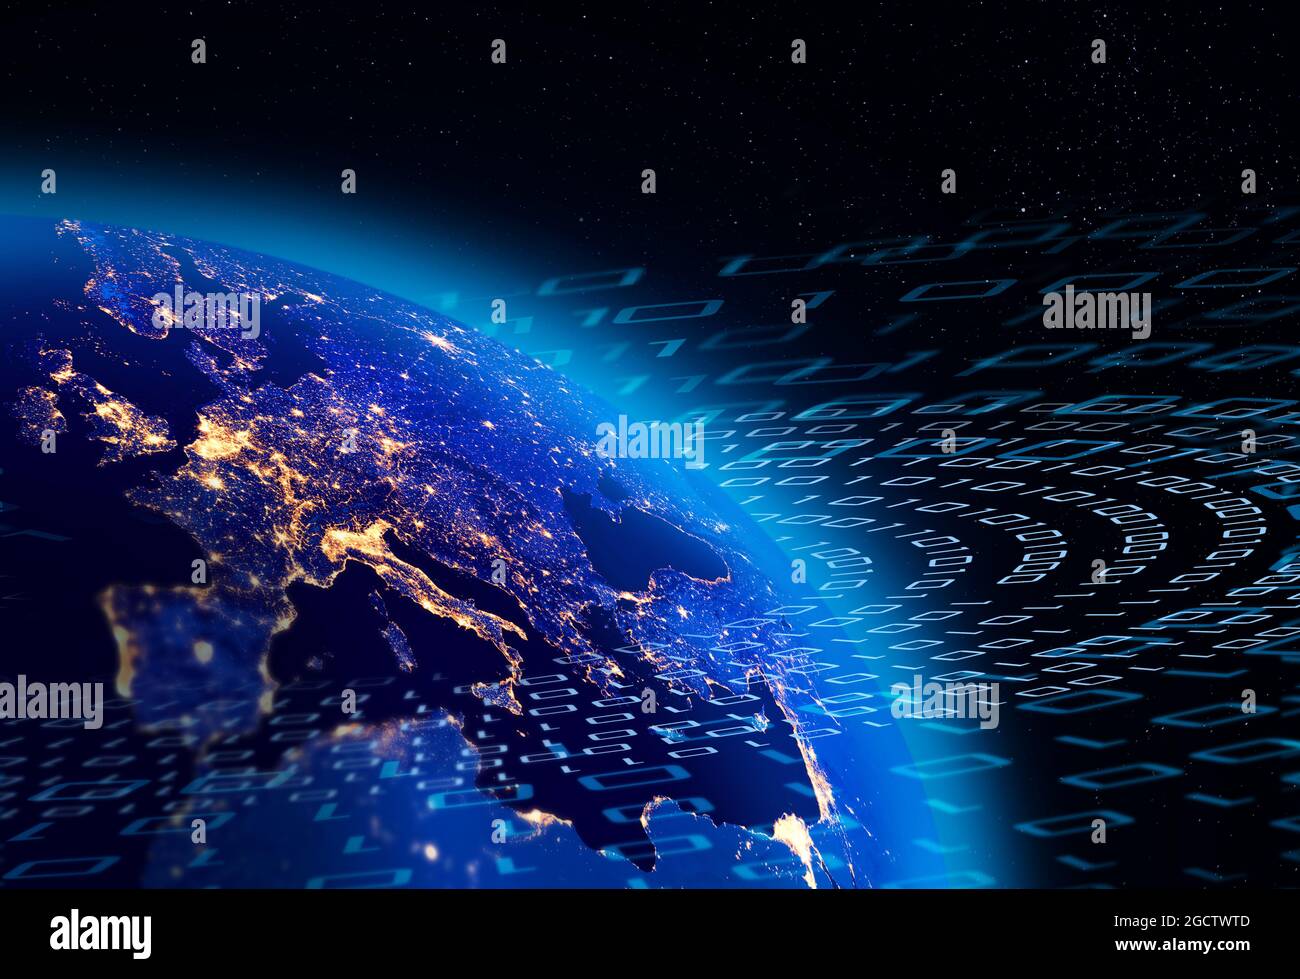 Binäre Daten fließen um den Planeten Erde, europäische Stadtlichter sind sichtbar. Digitales Kommunikationskonzept. Einige Elemente des Bildes, die von der NASA eingerichtet wurden. Stockfoto